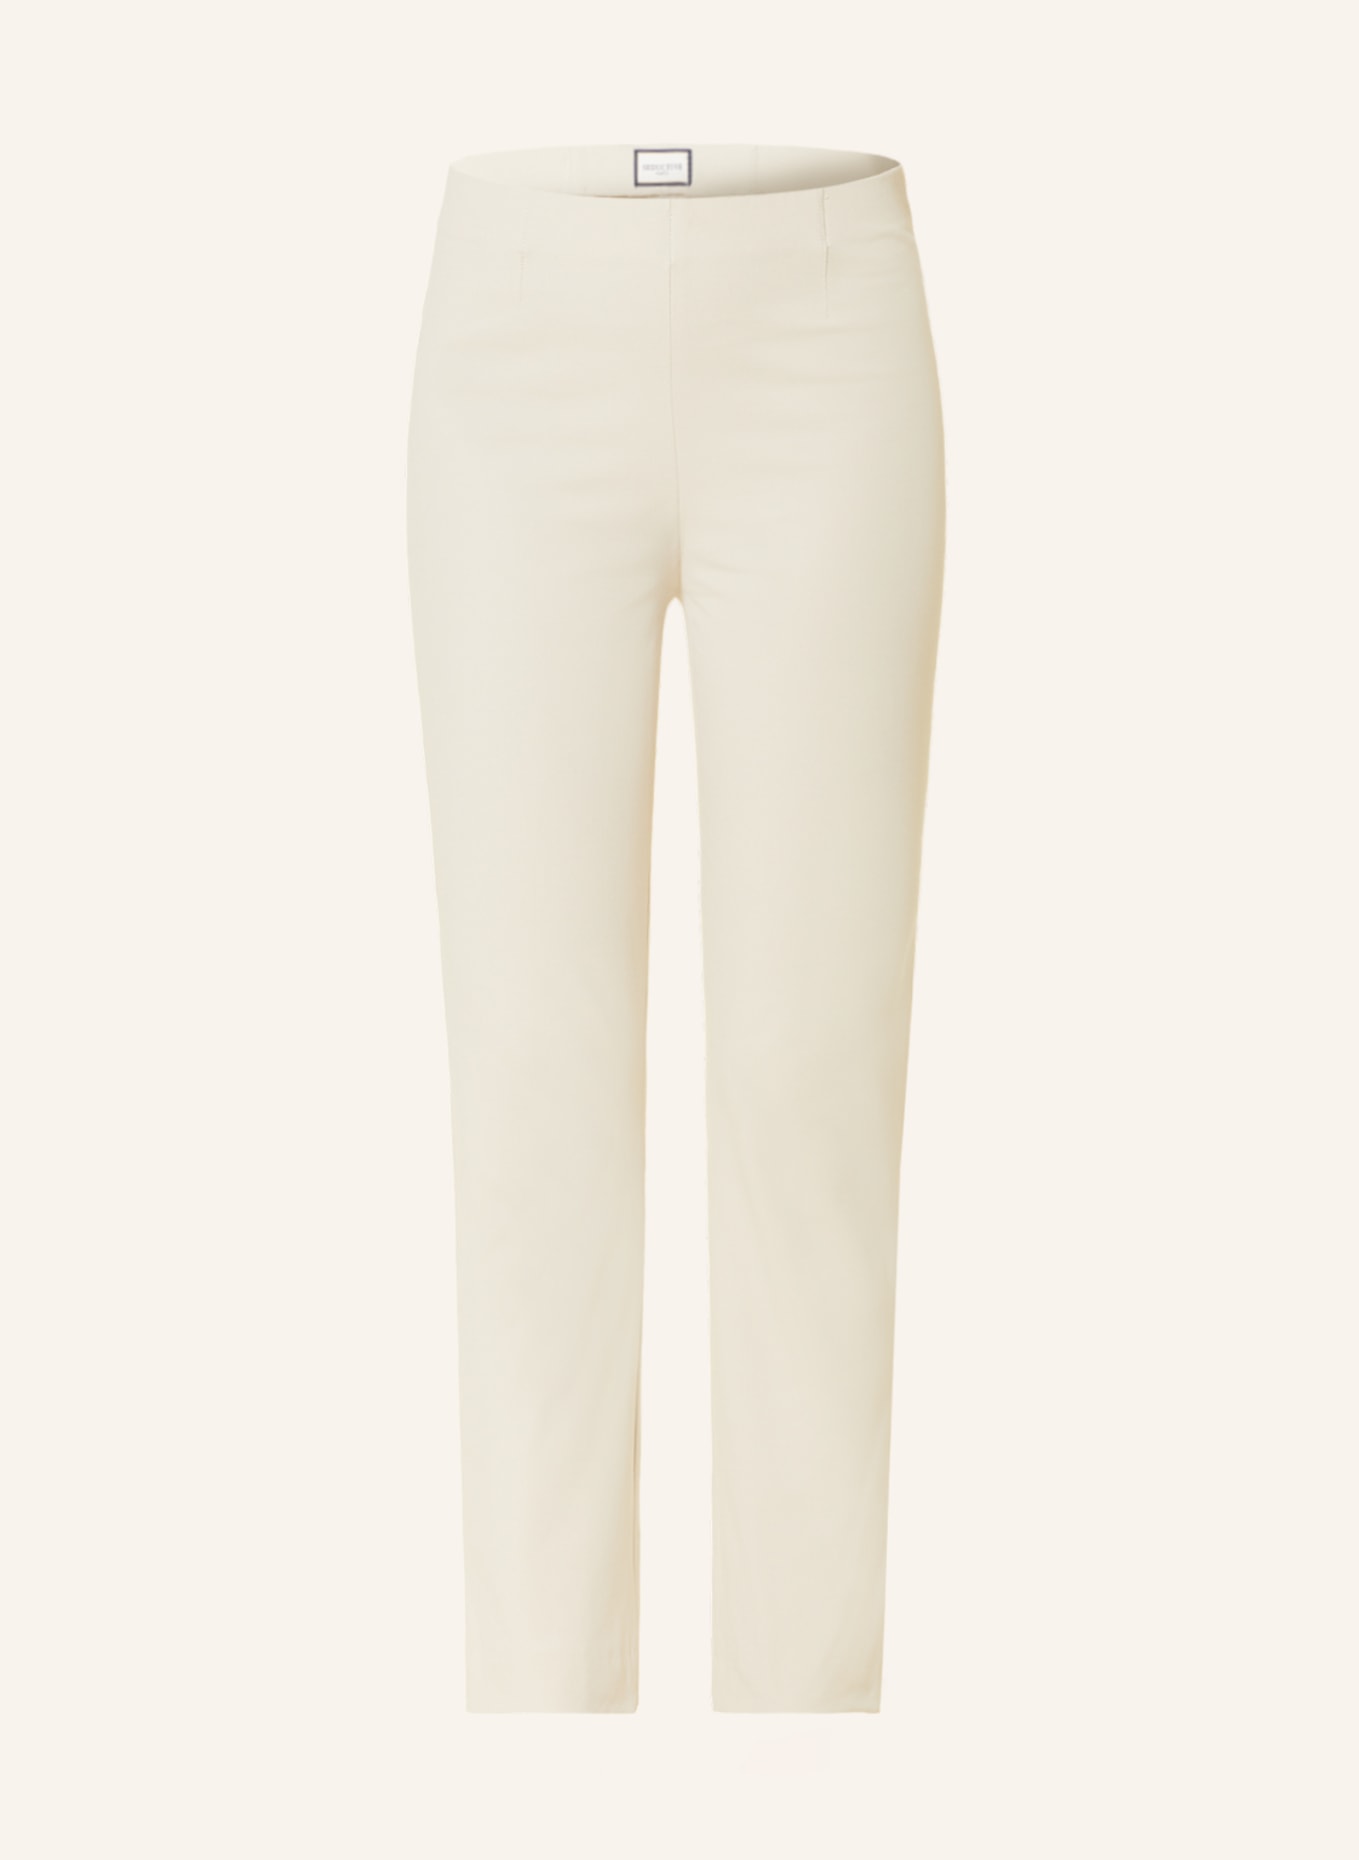 SEDUCTIVE Trousers CINDY, Color: BEIGE (Image 1)